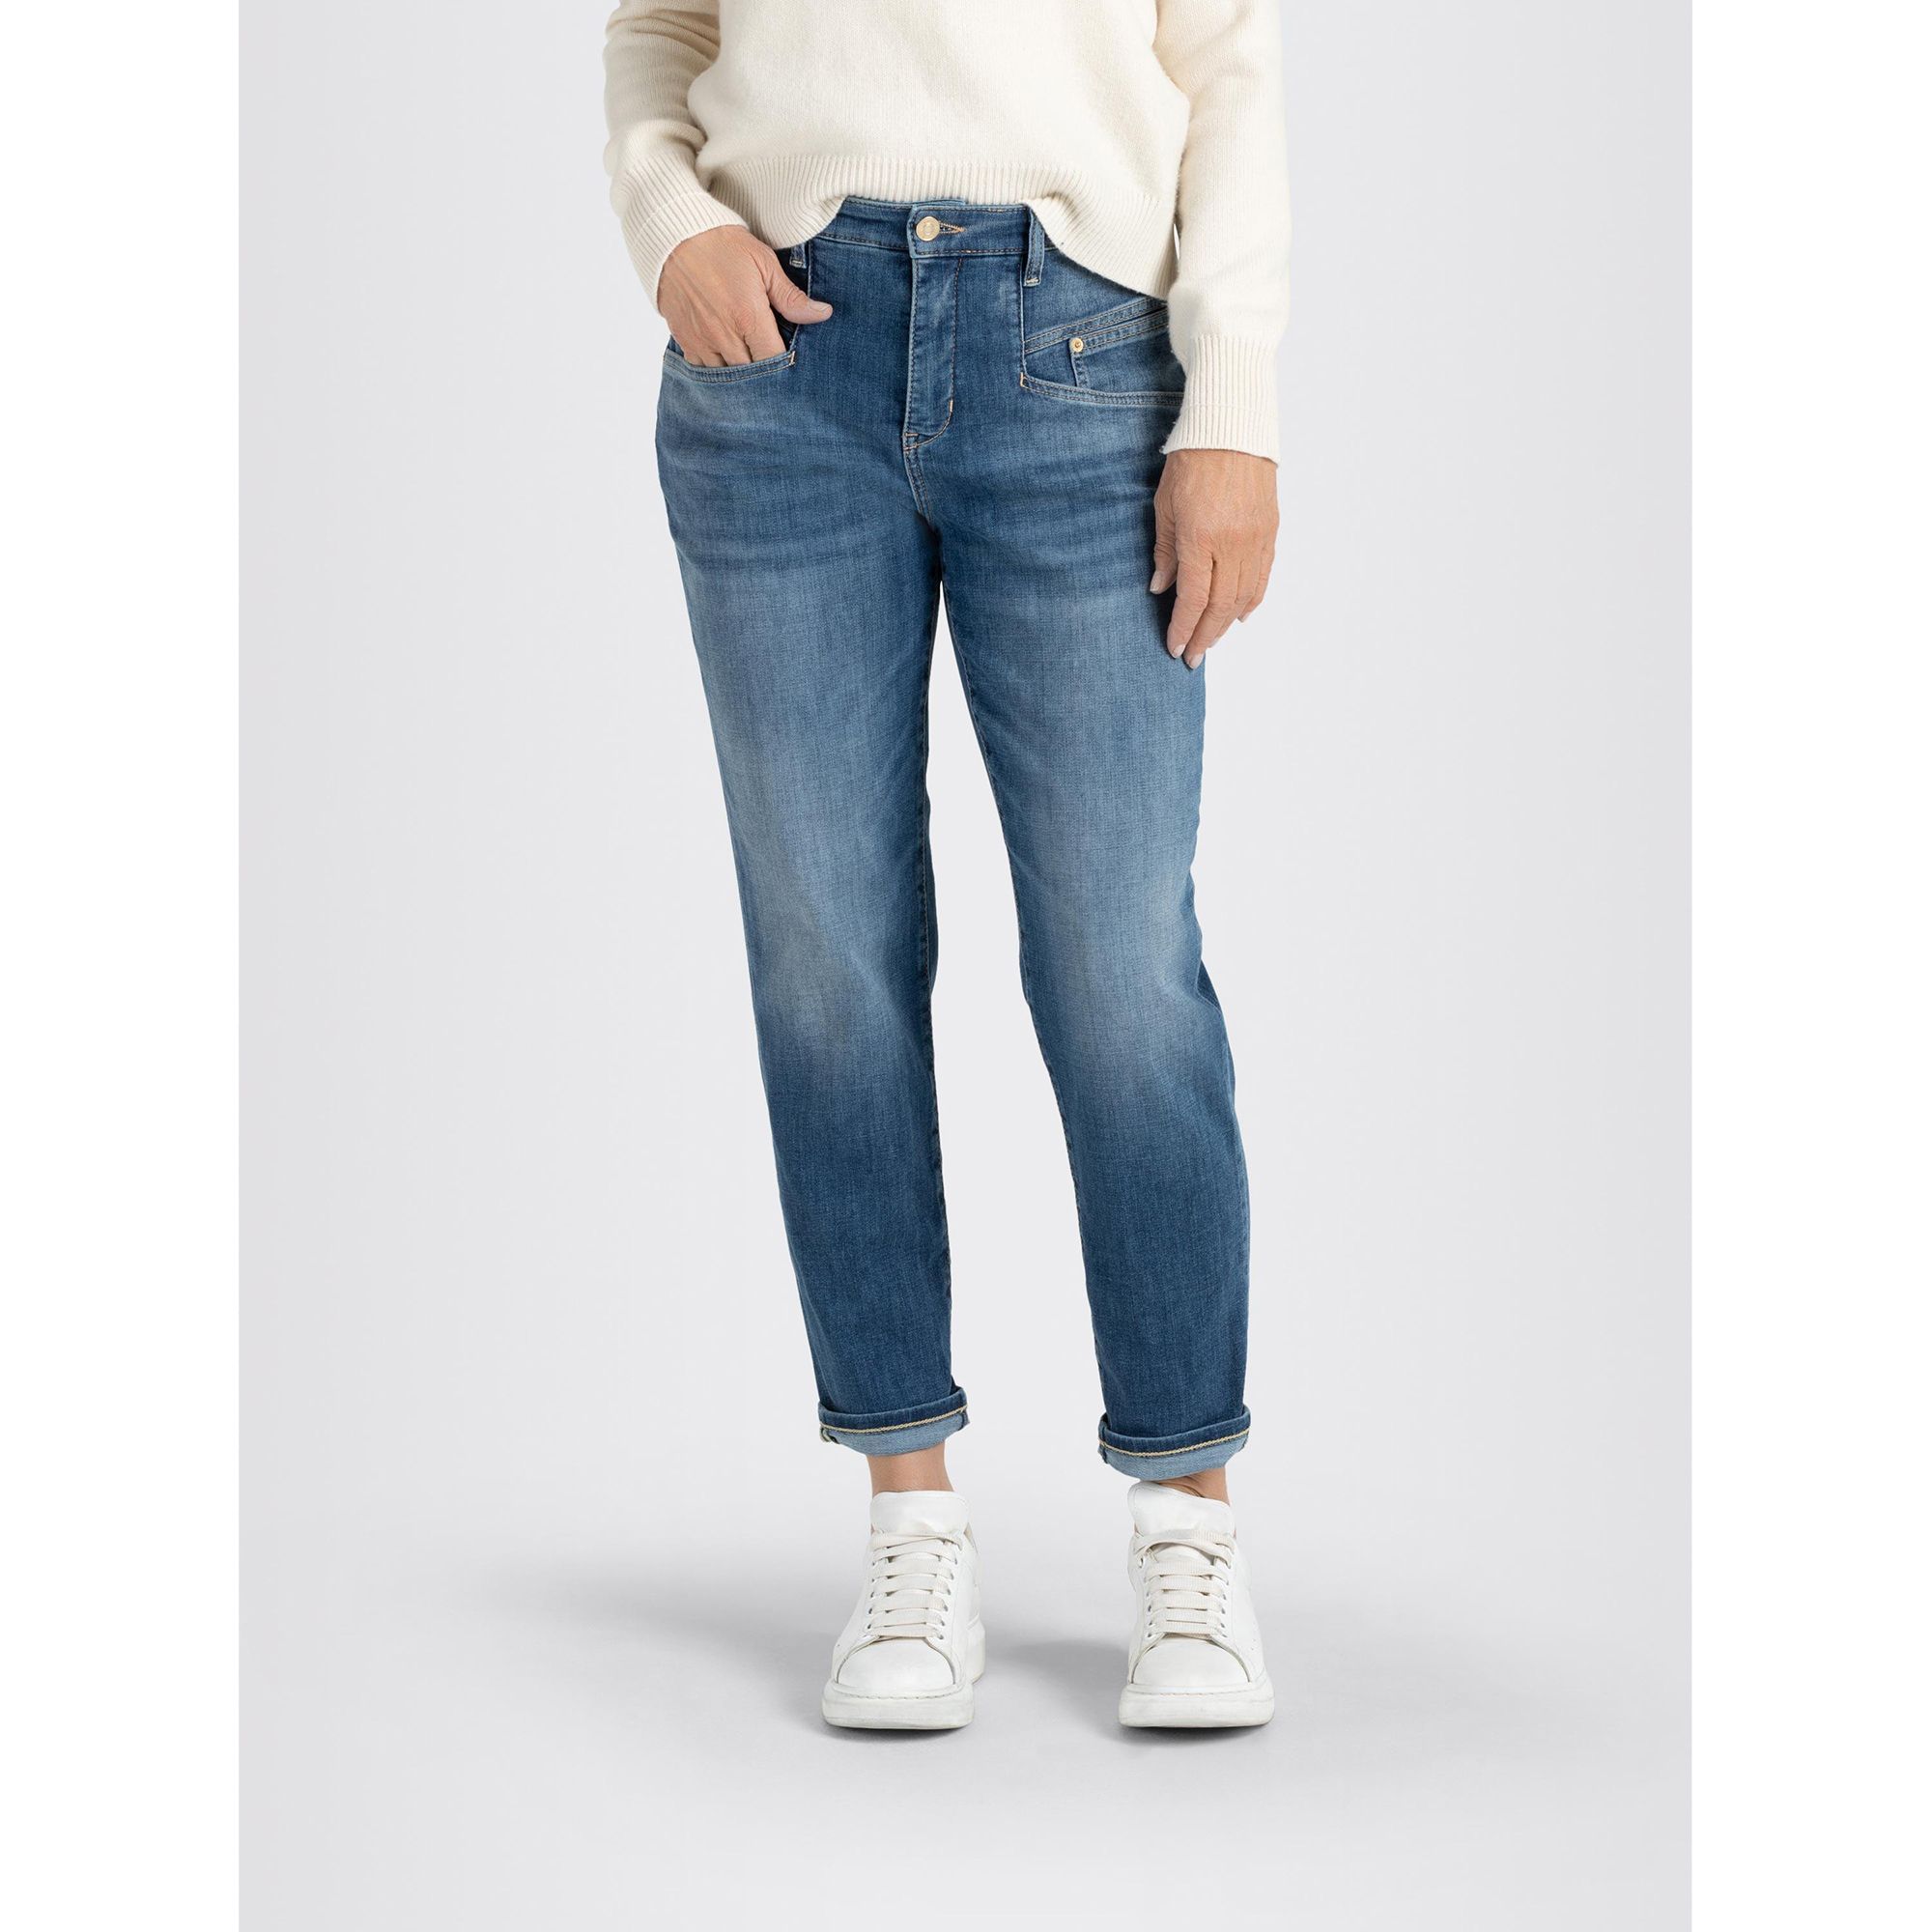 hohe Rich konischer Jeans MAC Carrot Beinverlauf 5-Pocket-Style Leibhöhe